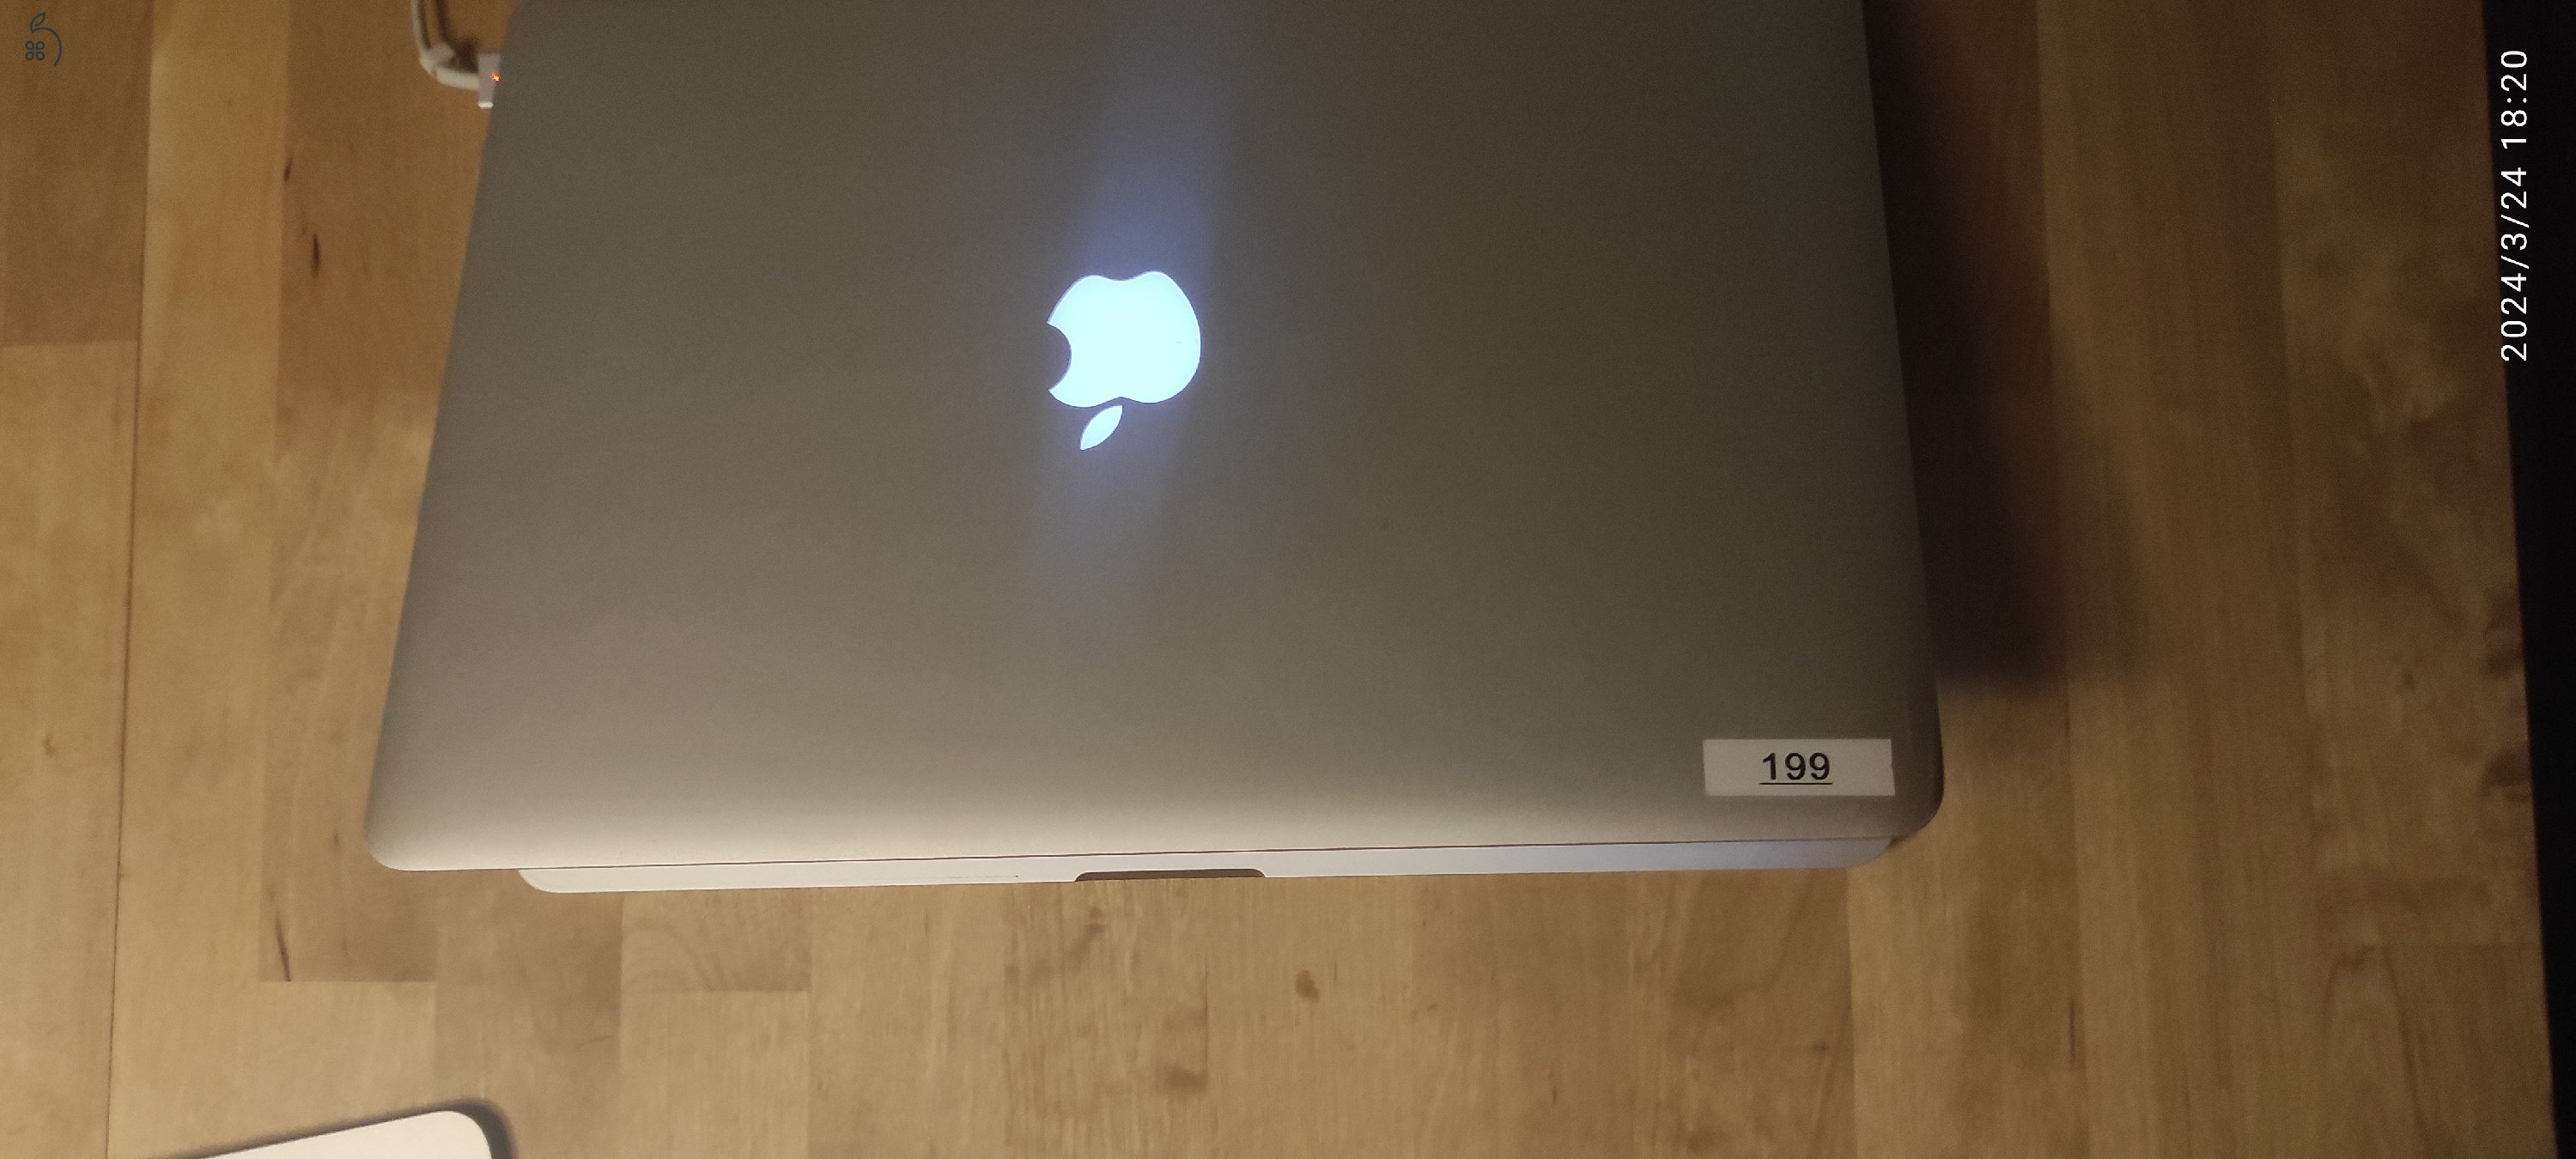 használt 2012-es macbook pro